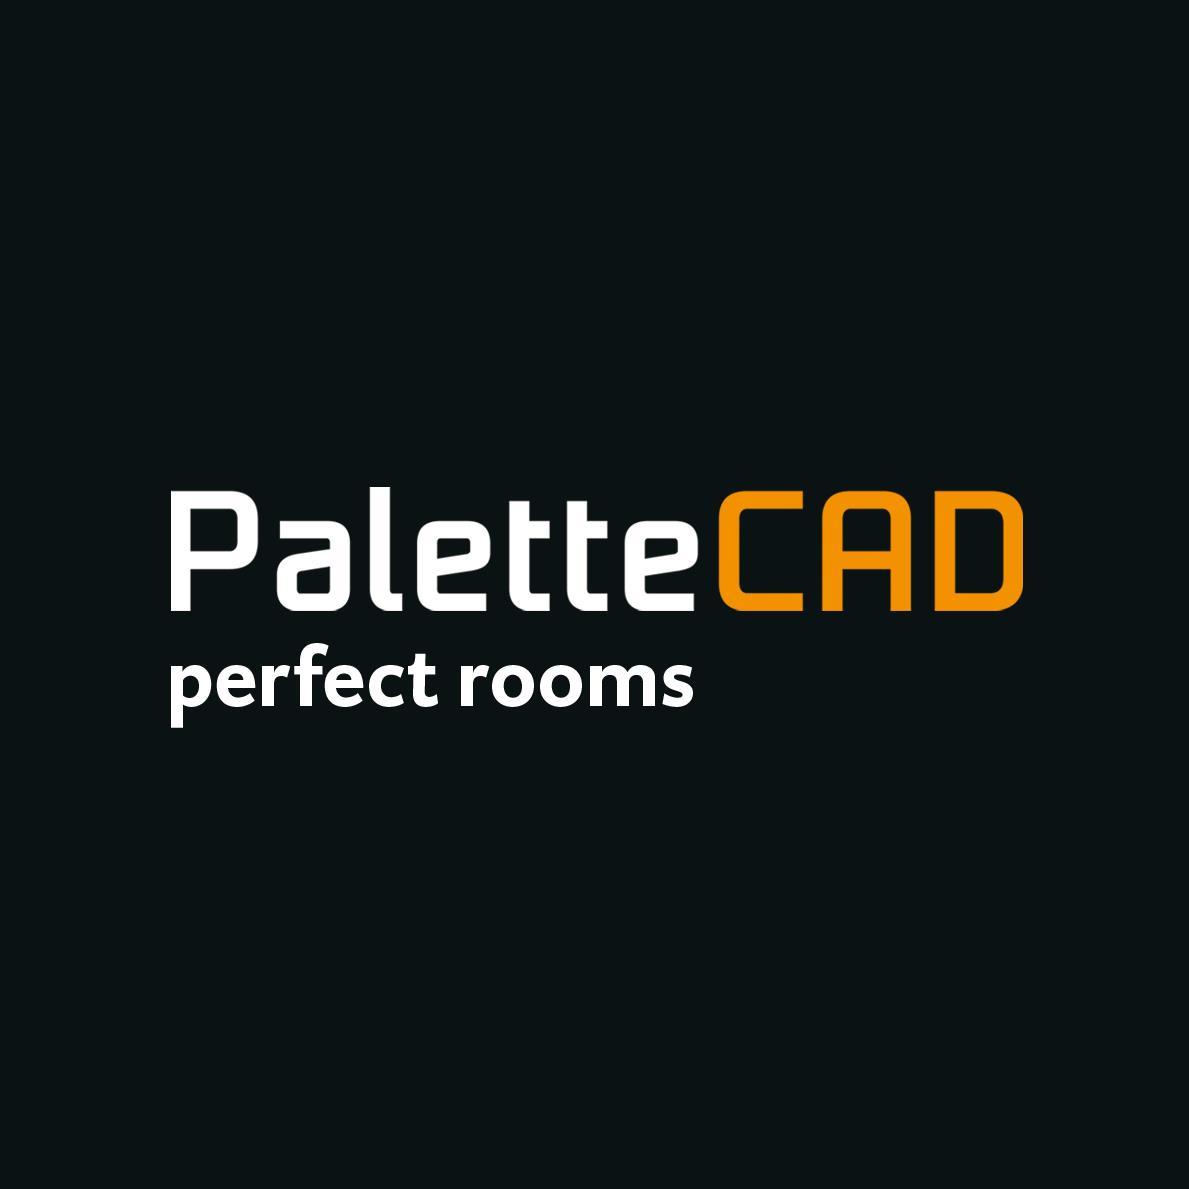 Palette CAD 
perfect rooms
https://t.co/86VeF7wpdo